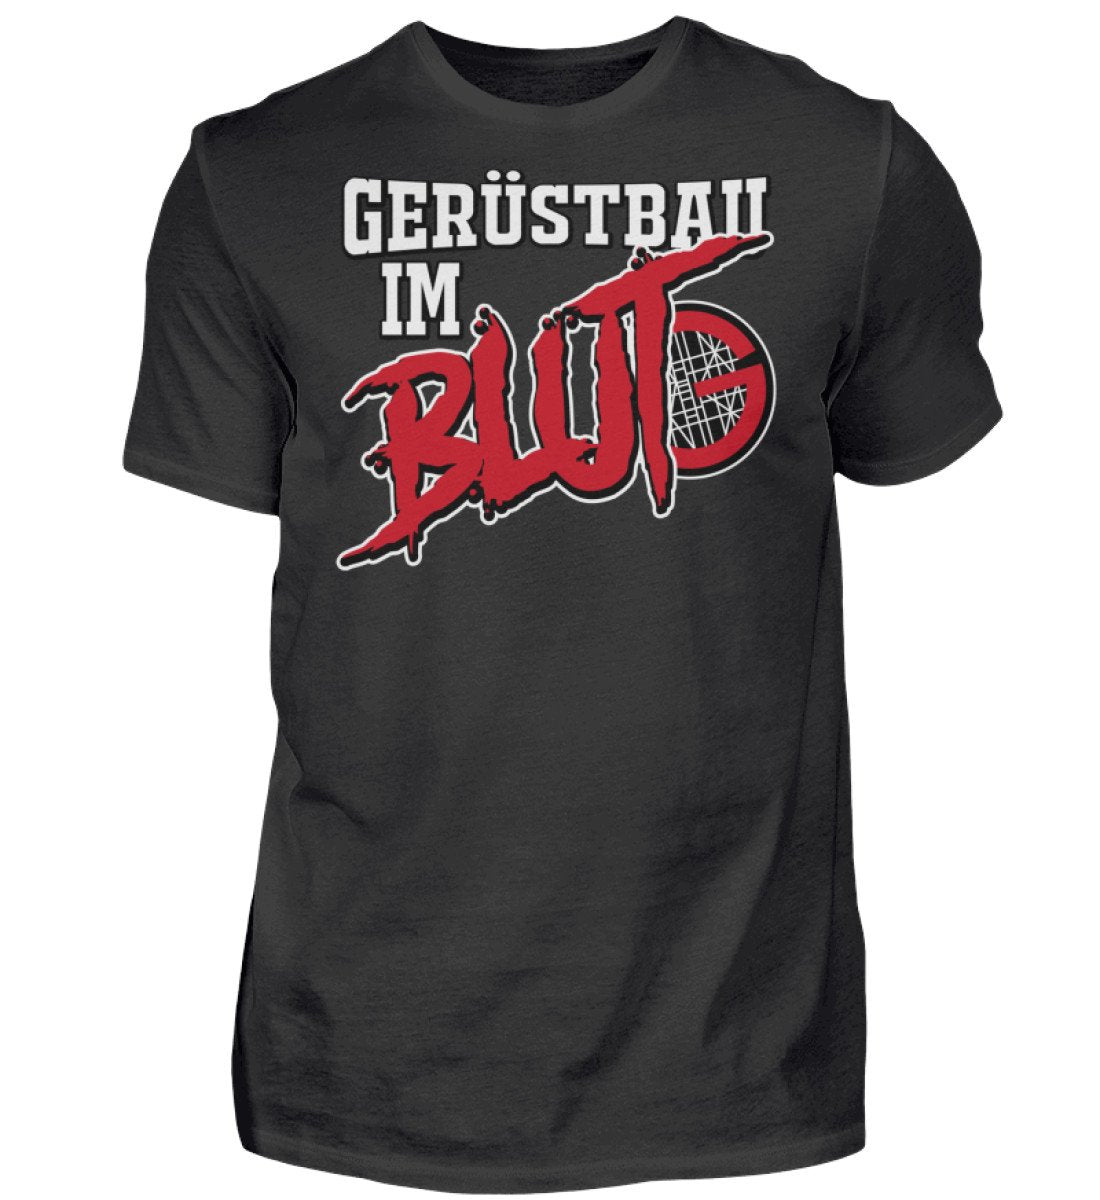 Gerüstbauer im Blut Herren T-Shirt www.geruestbauershop.de